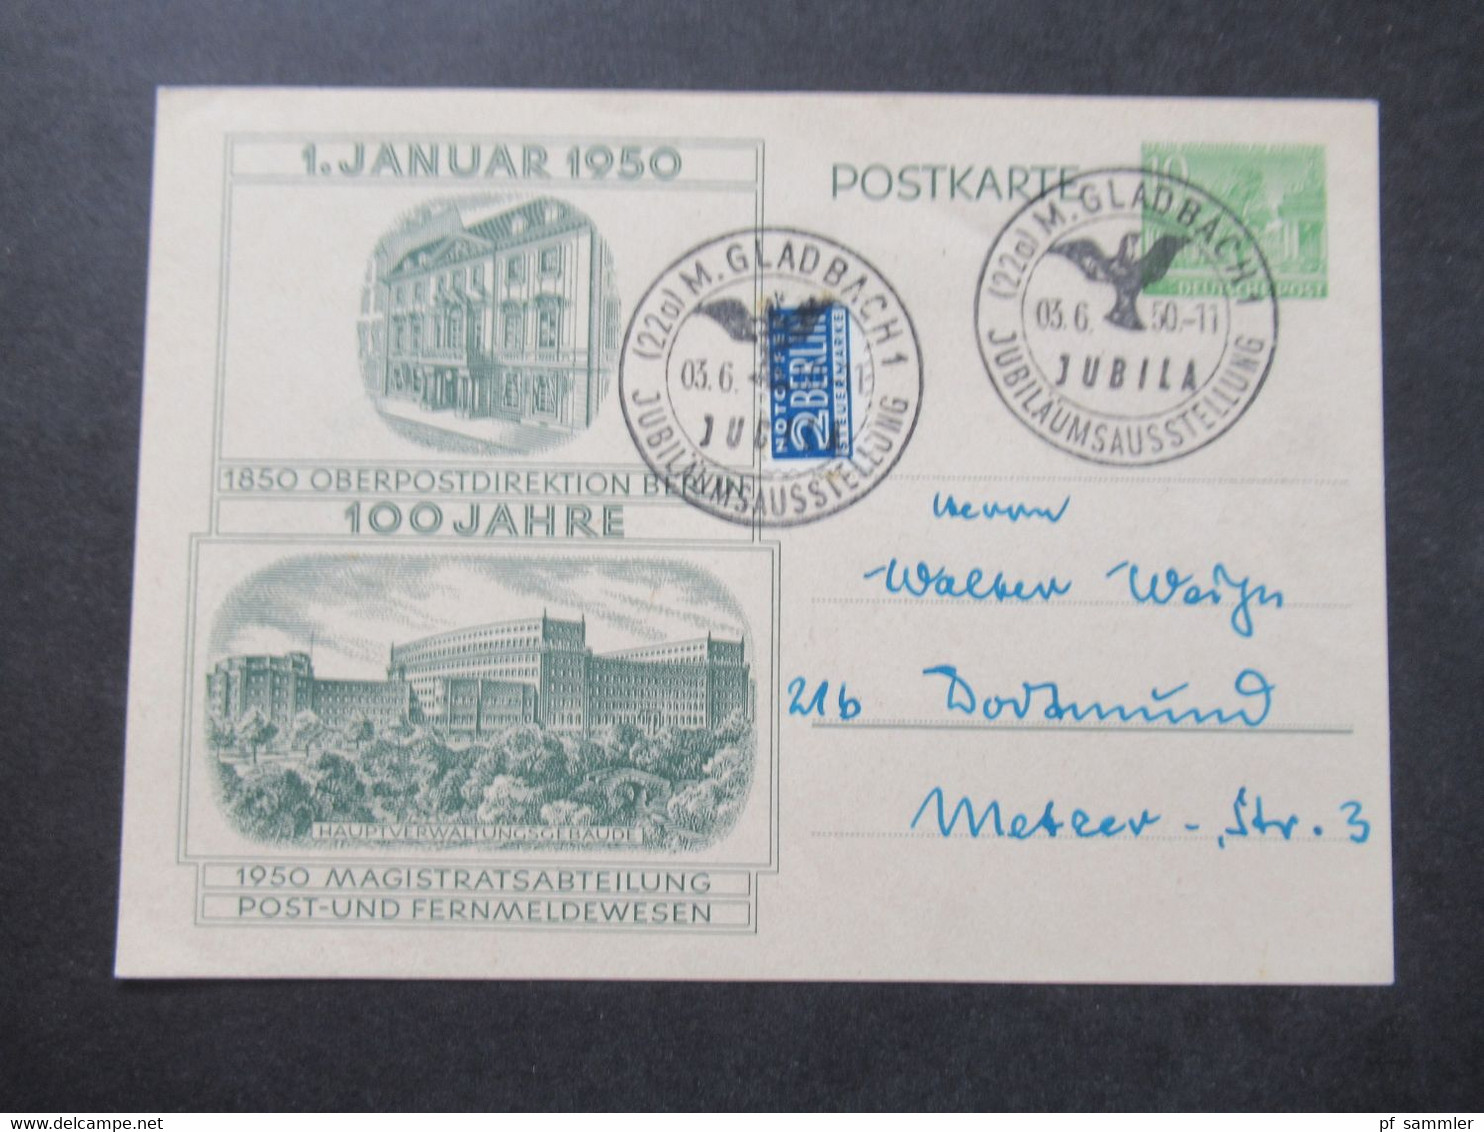 Berlin (West) 1950 Sonderpostkarte 100 Jahre Oberpostdirektion Berlin P 11 Mit Notopfer Und SSt M-Gladbach Jubila - Postcards - Used